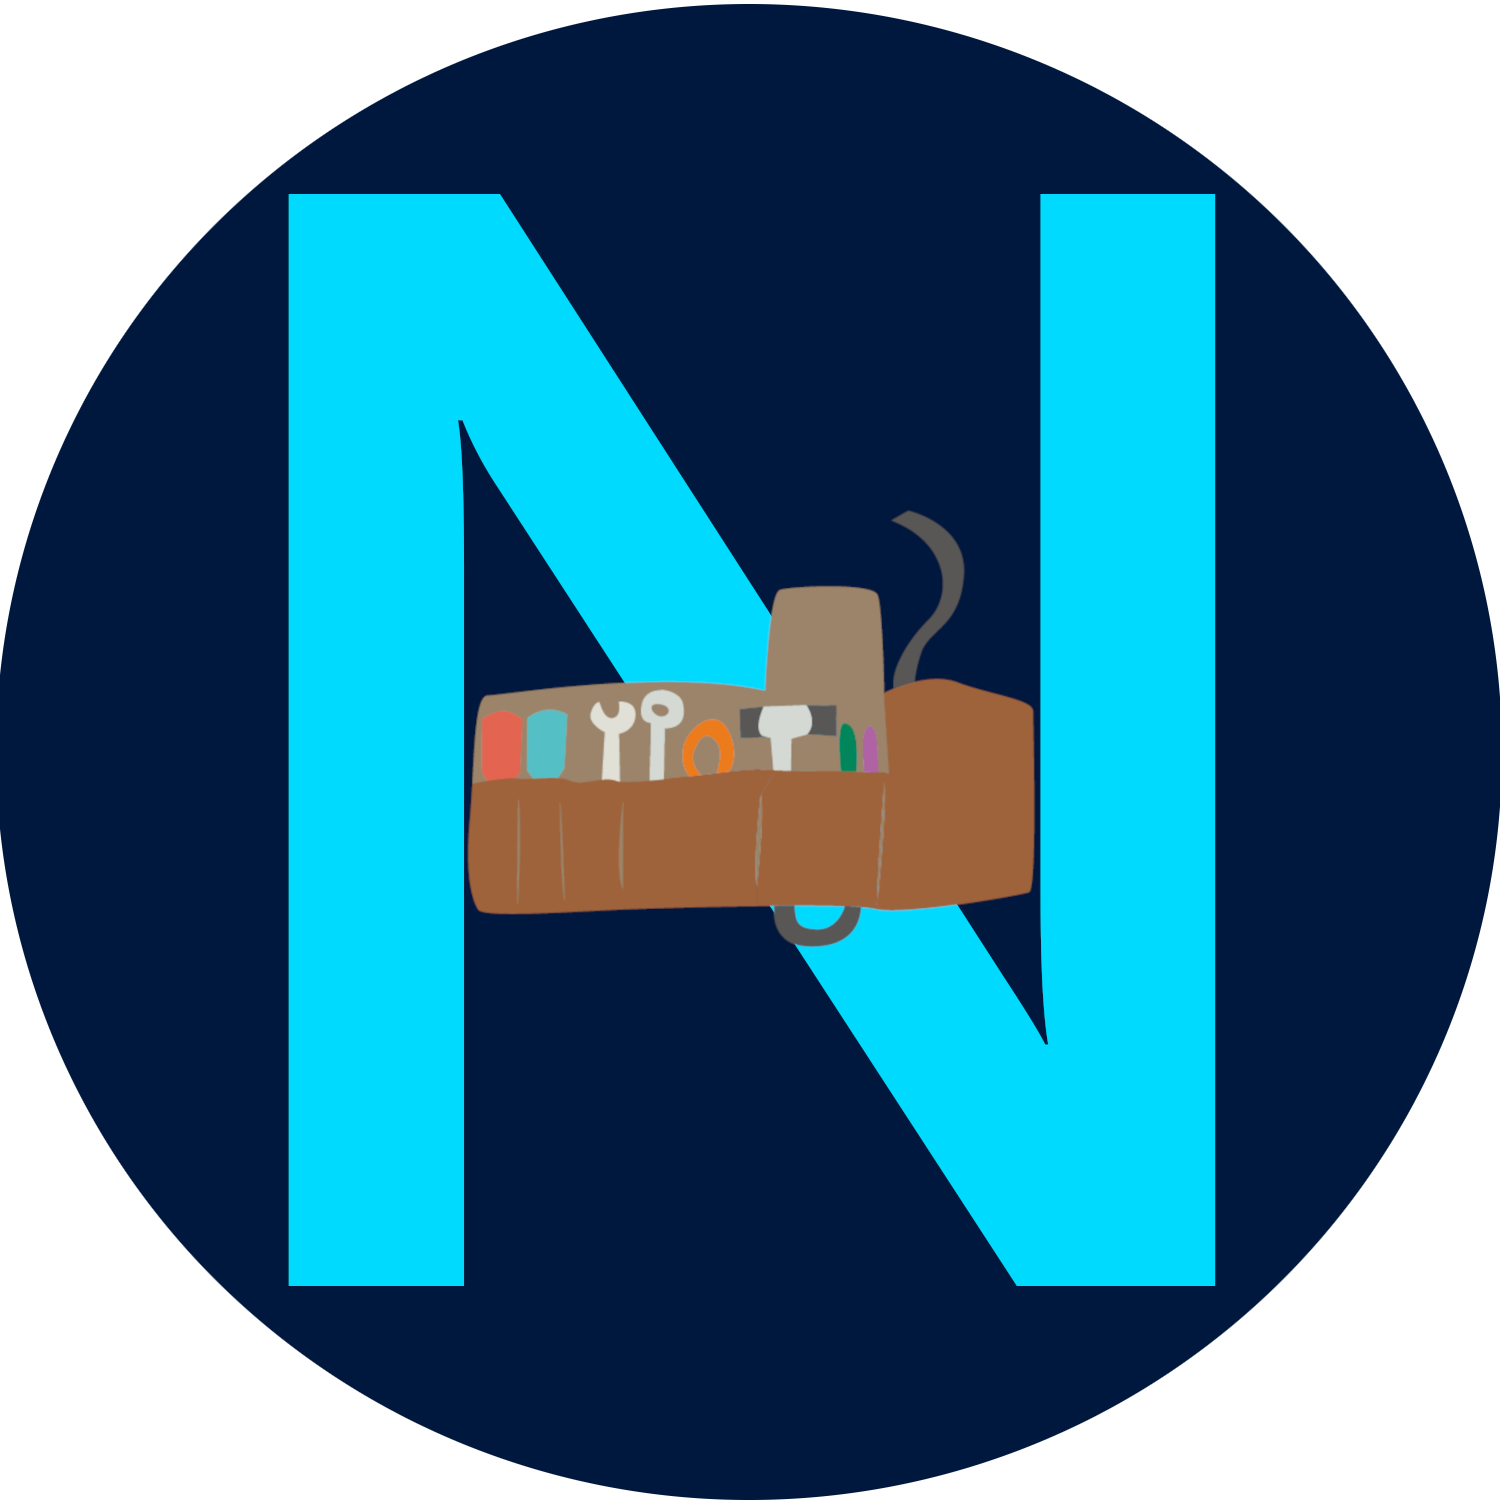 Ny0bi Tool's icon